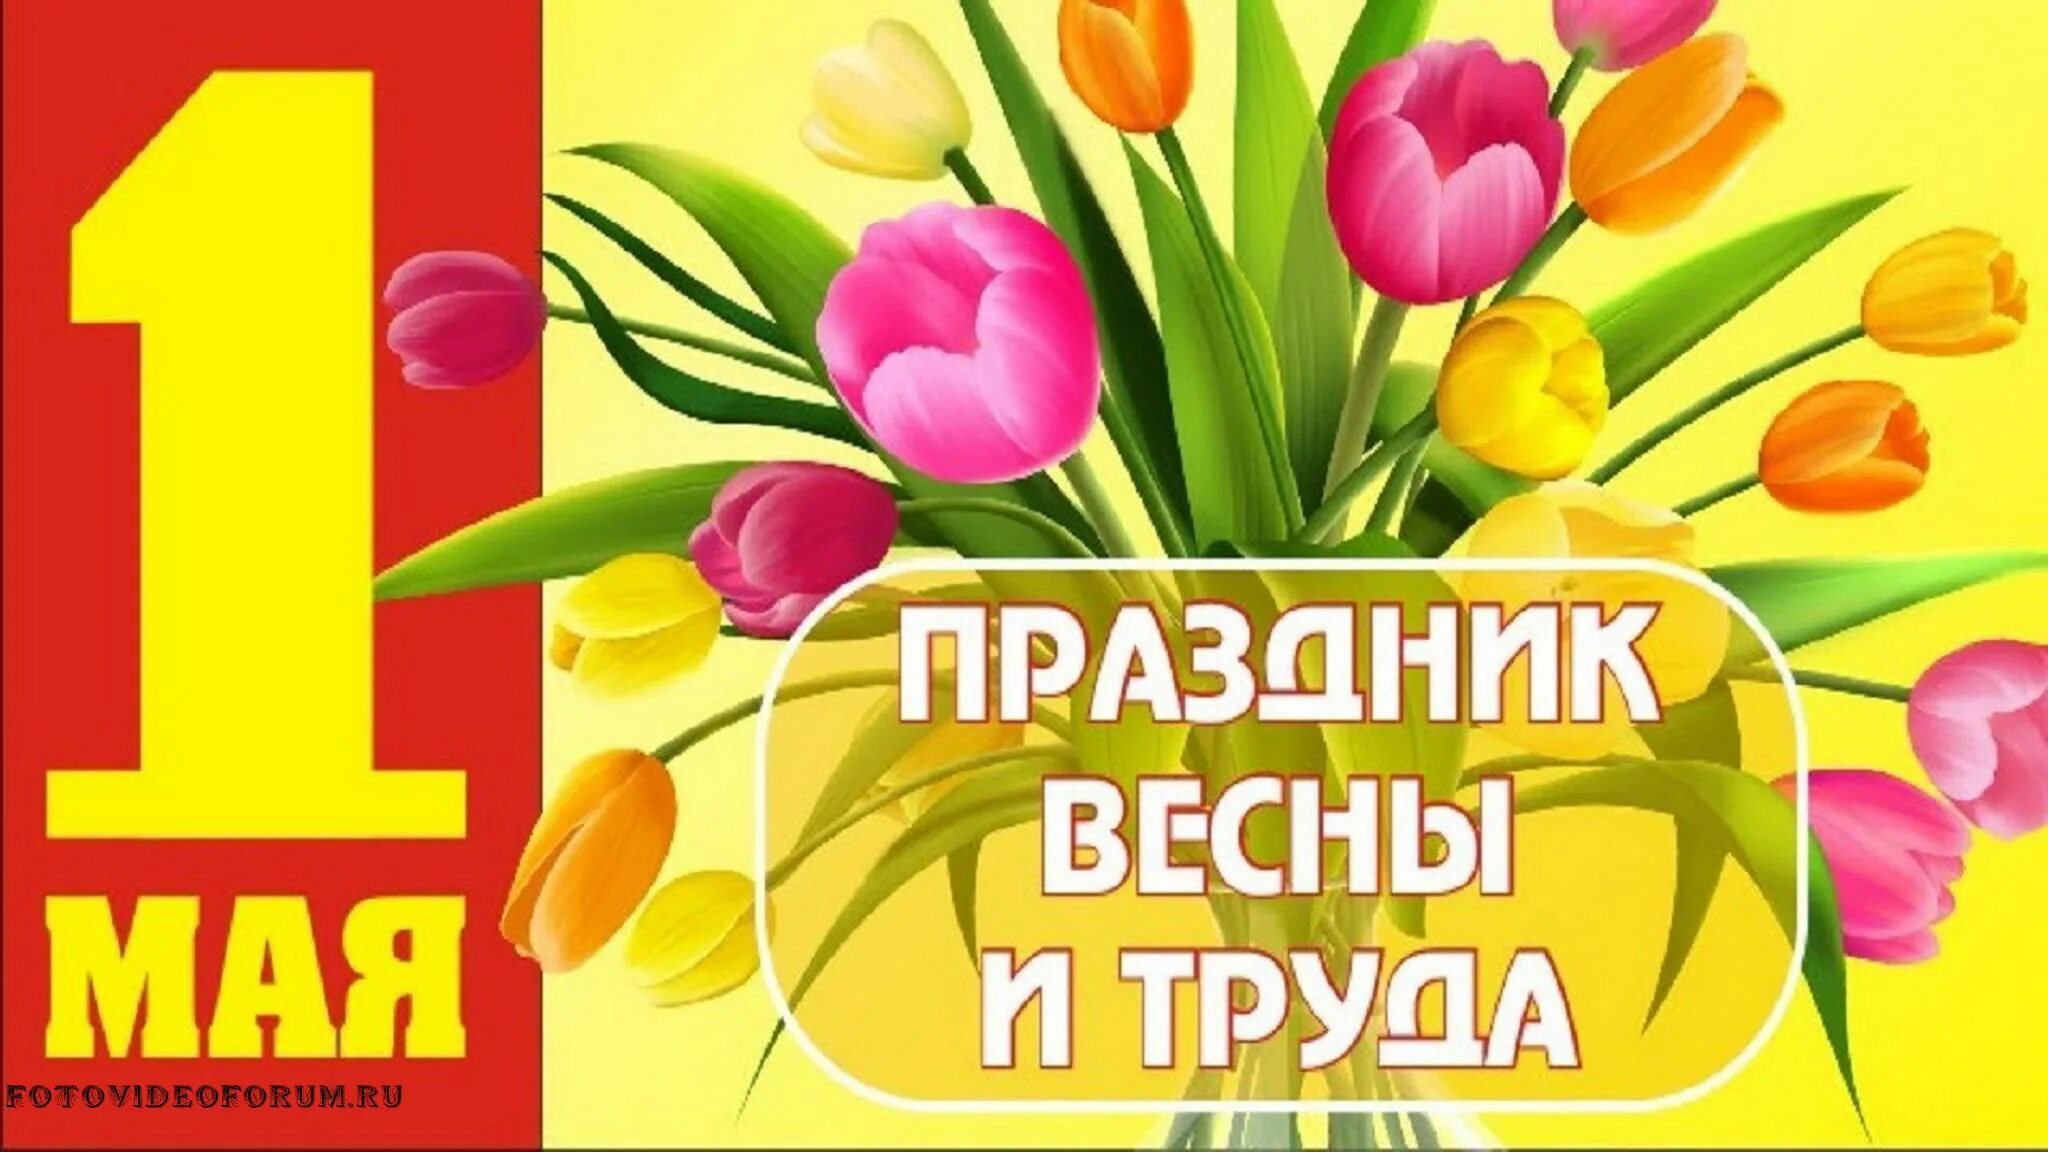 Контакты май 1. Поздравление с 1 мая. Открытки с 1 мая. 1 Мая праздник весны и труда. Поздравления с первым мая.